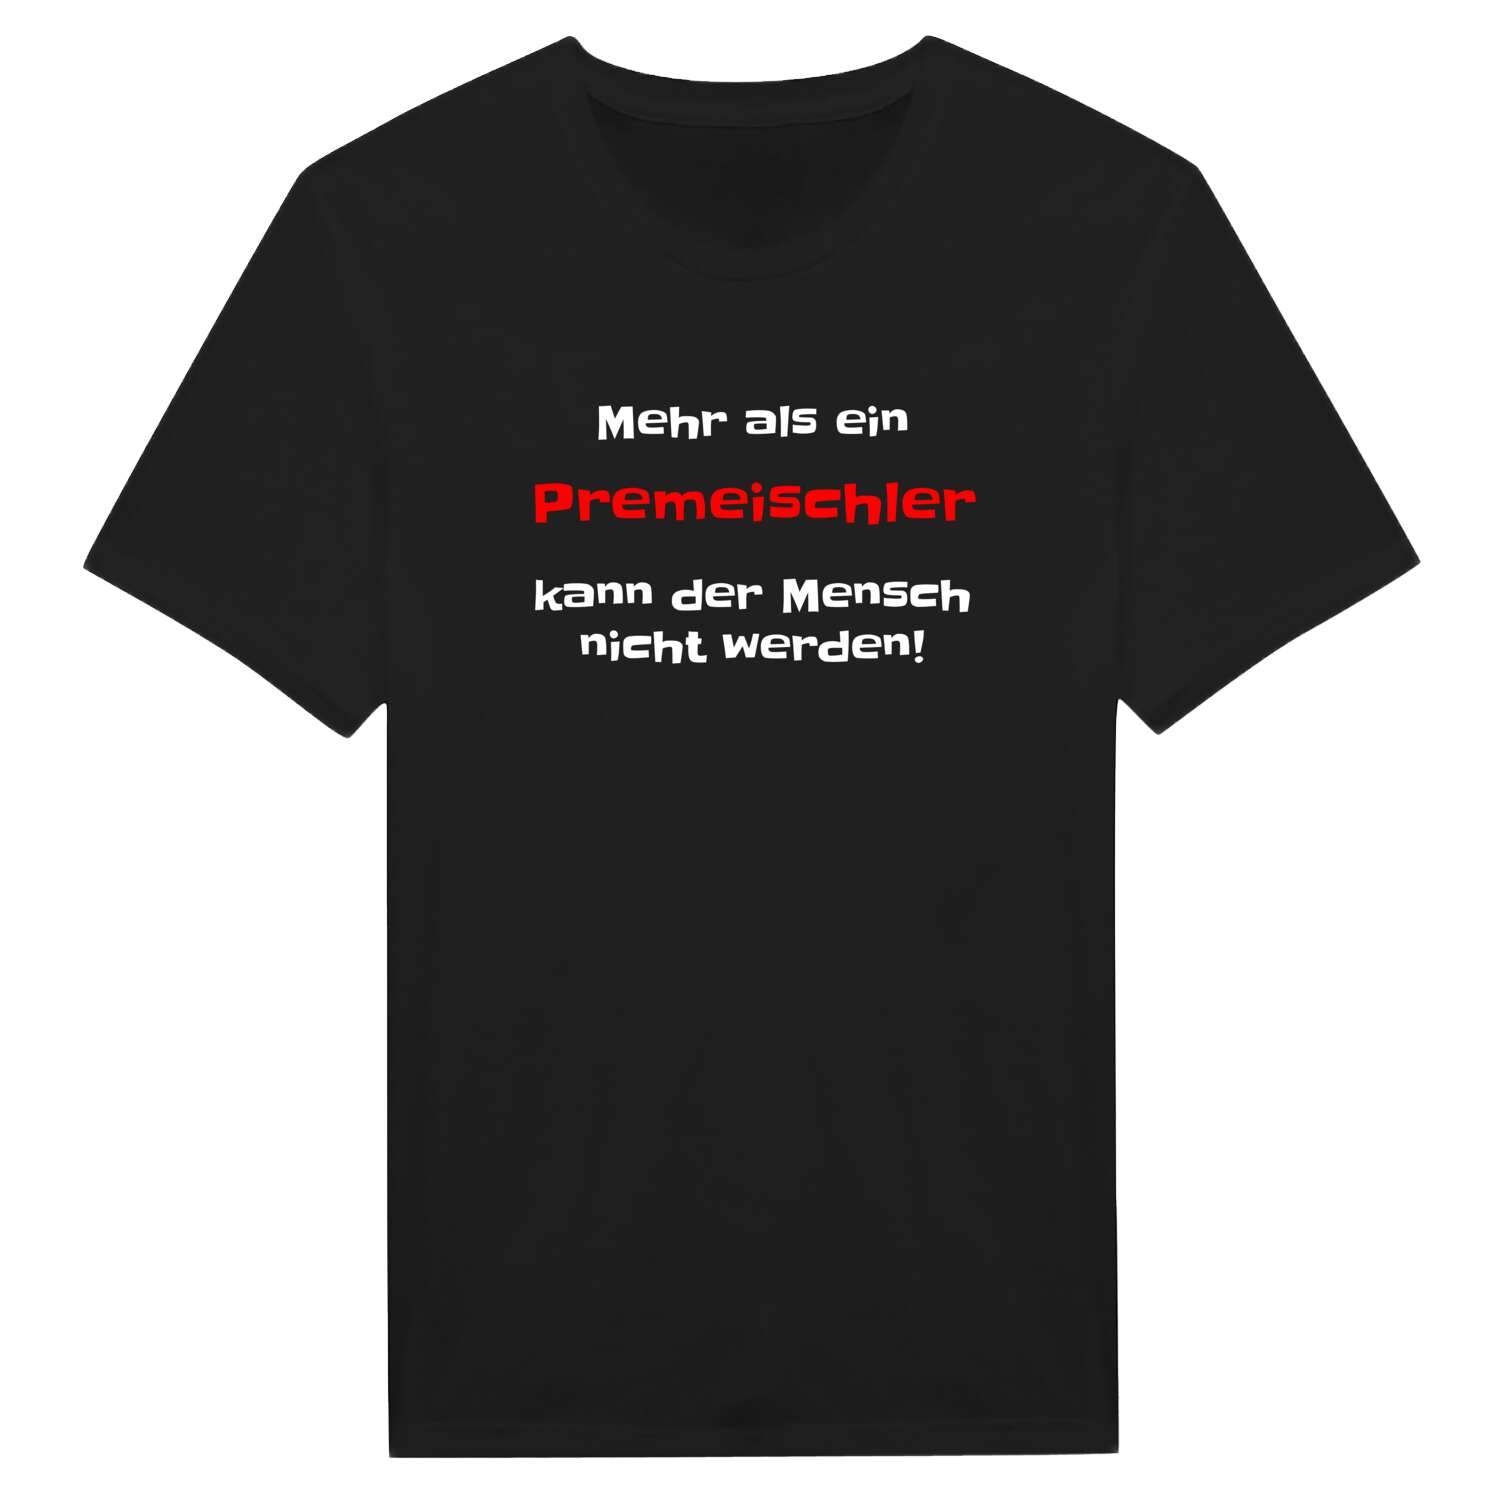 Premeischl T-Shirt »Mehr als ein«